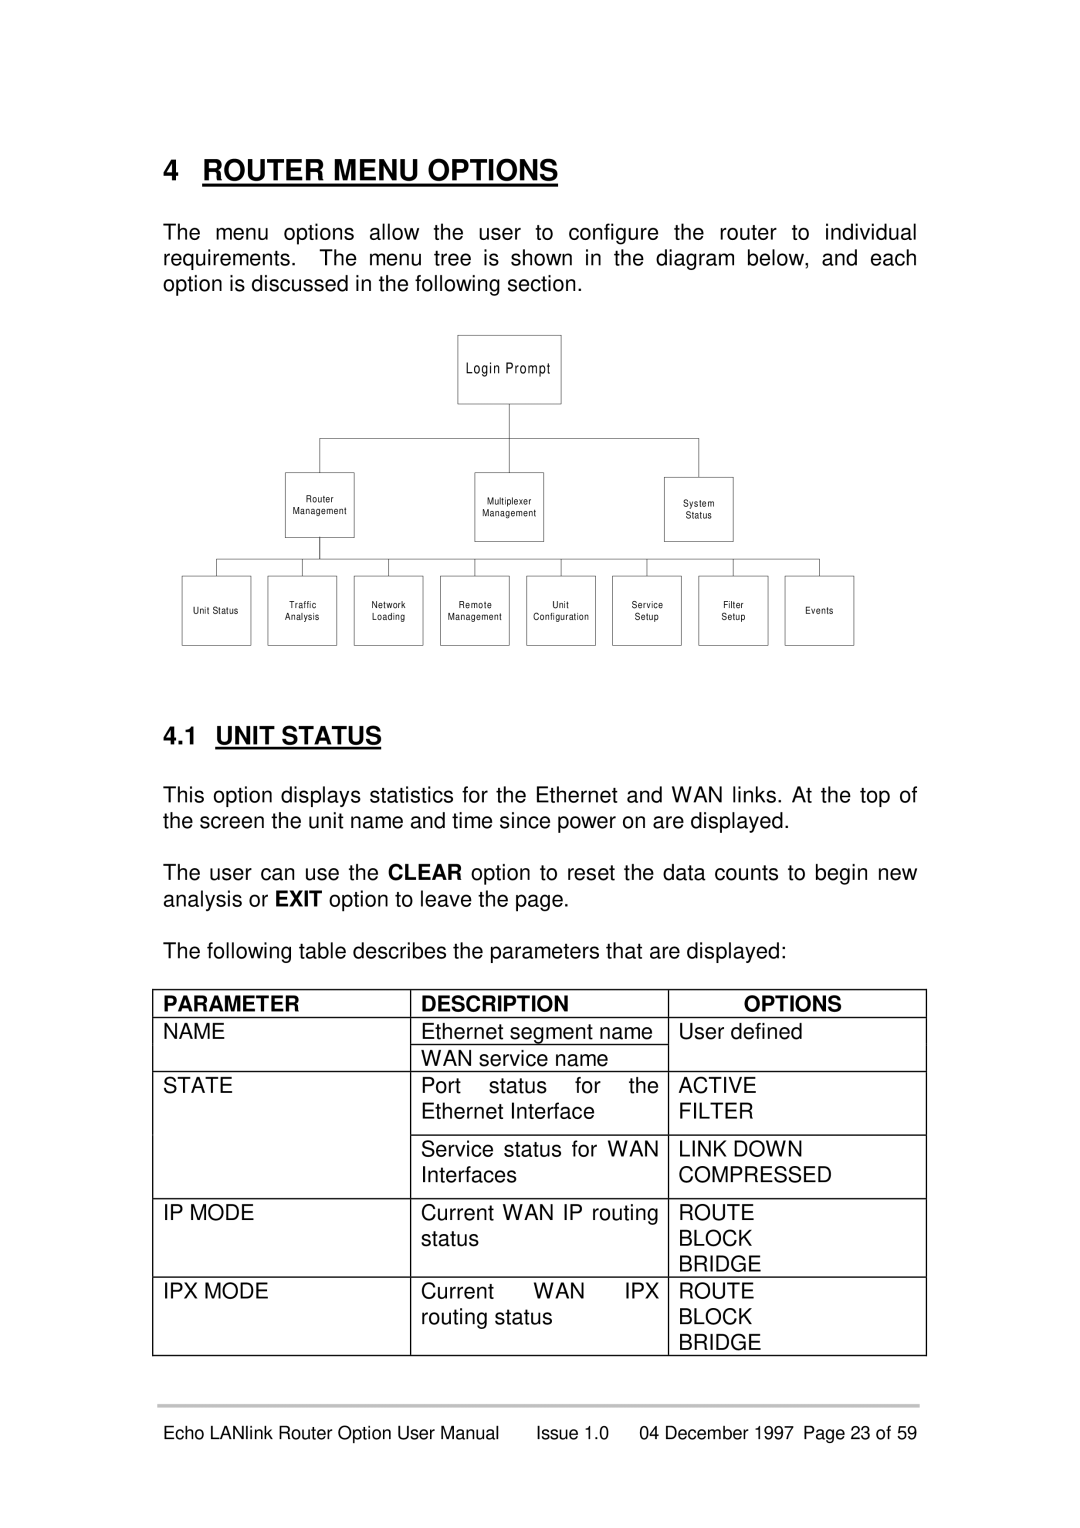 Echo EN55022 manual Router Menu Options, Unit Status, Parameter, Description 